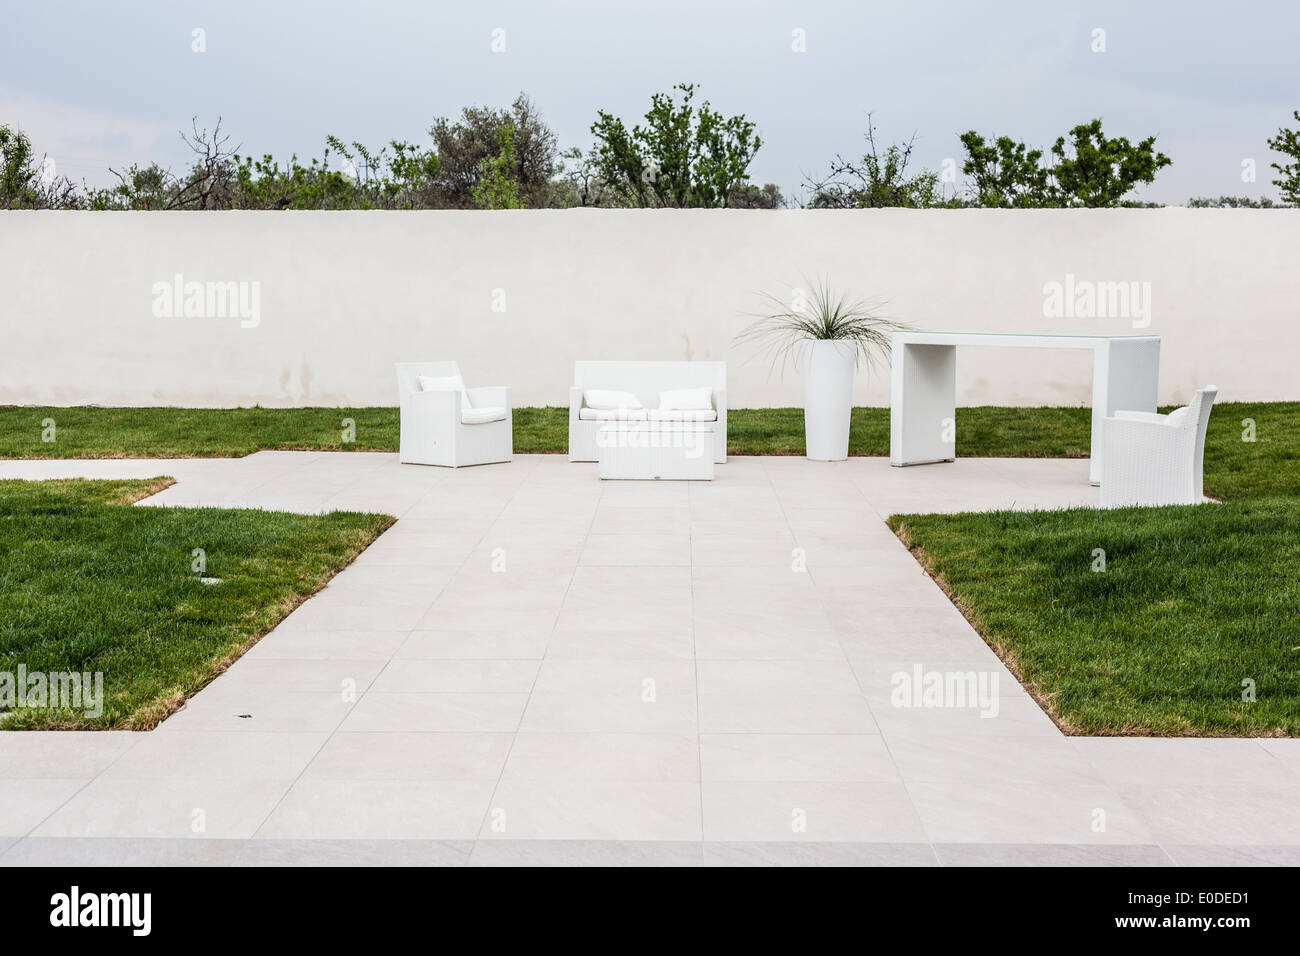 Un style minimaliste avec un mobilier blanc pour la vie en plein air Banque D'Images